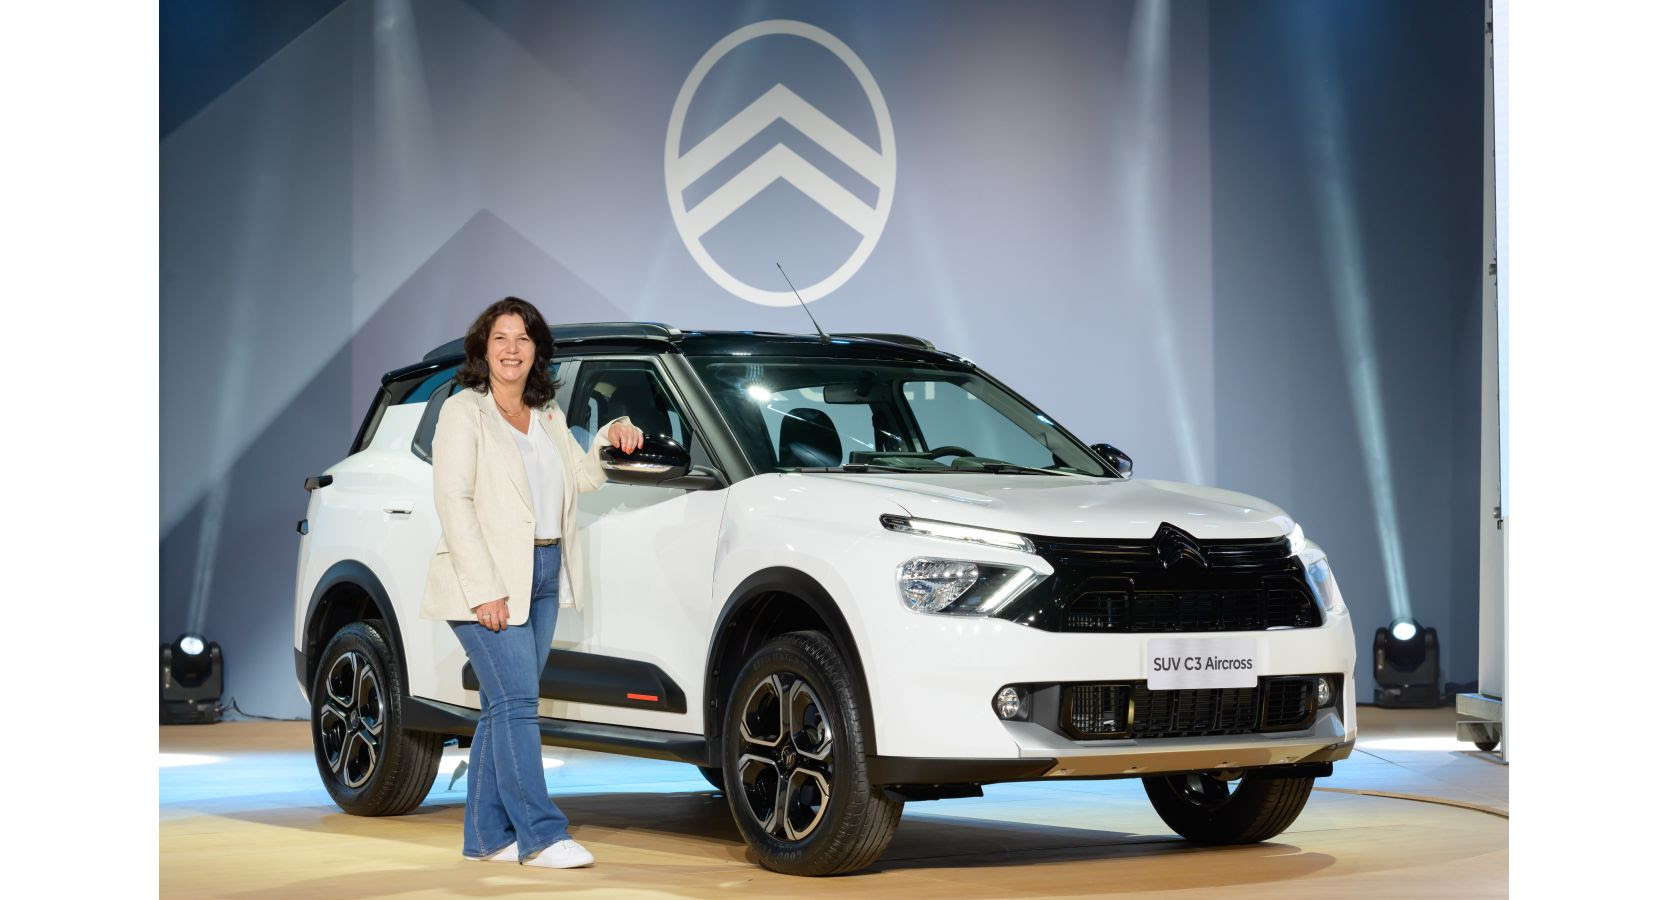 Citroën Sudamérica continúa develando equipamientos del Nuevo C3 Aircross